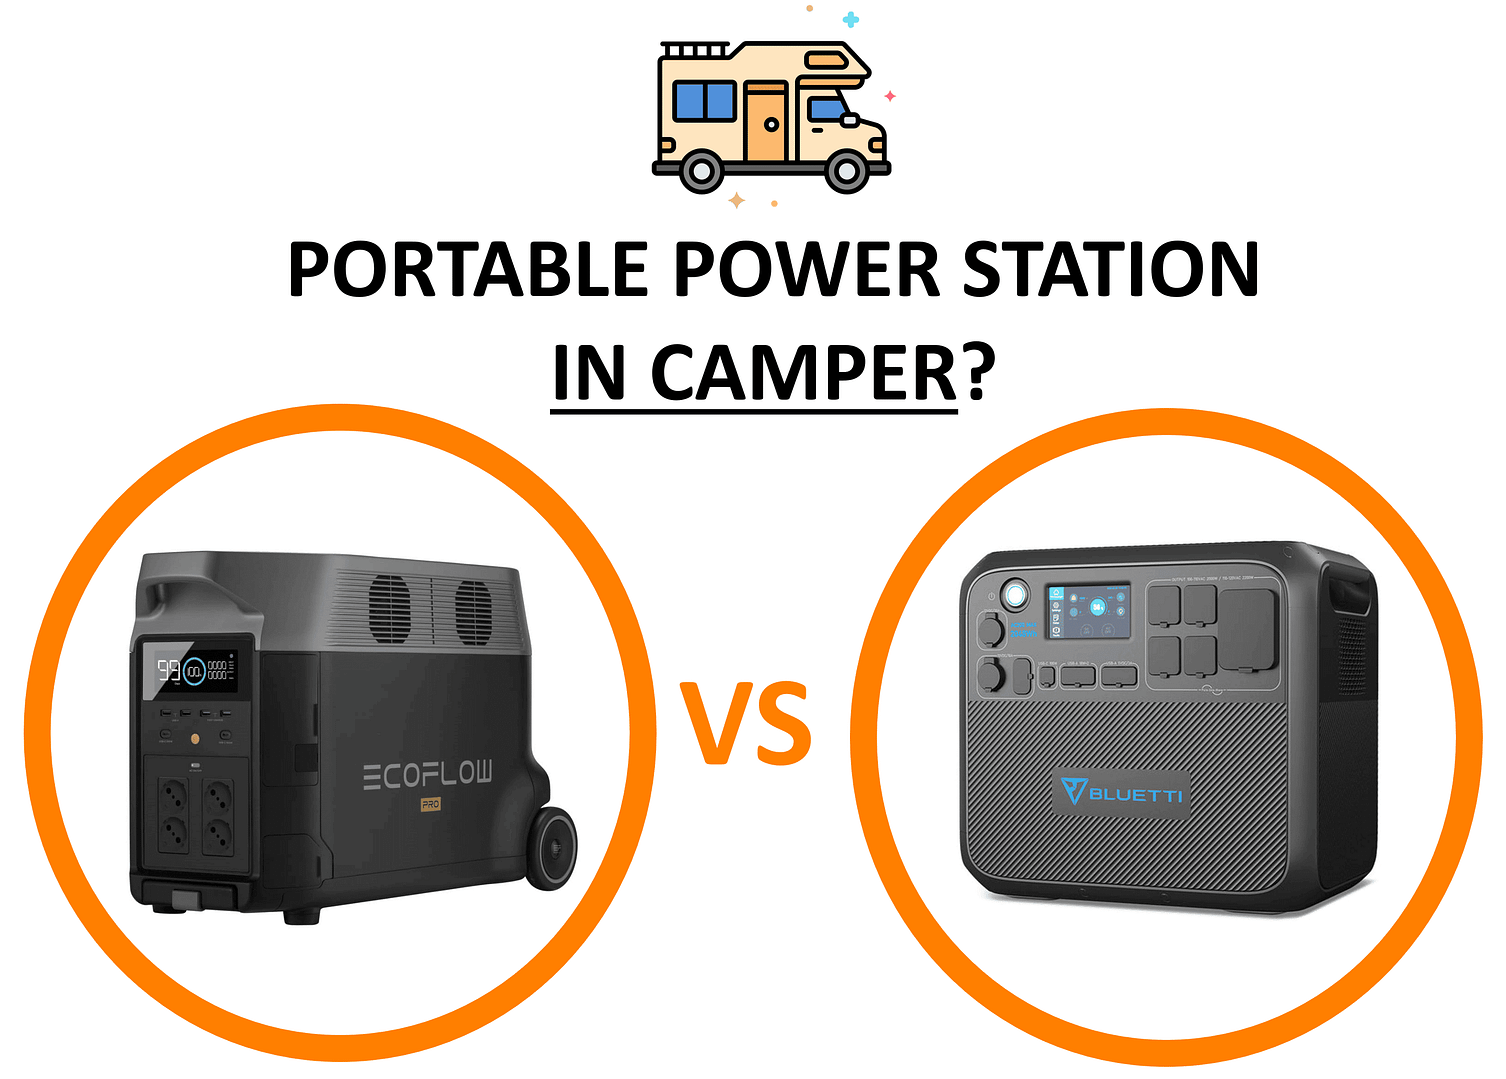 bluetti vs ecoflow - qual'è meglio - power station portatile per camper campeggio recensione